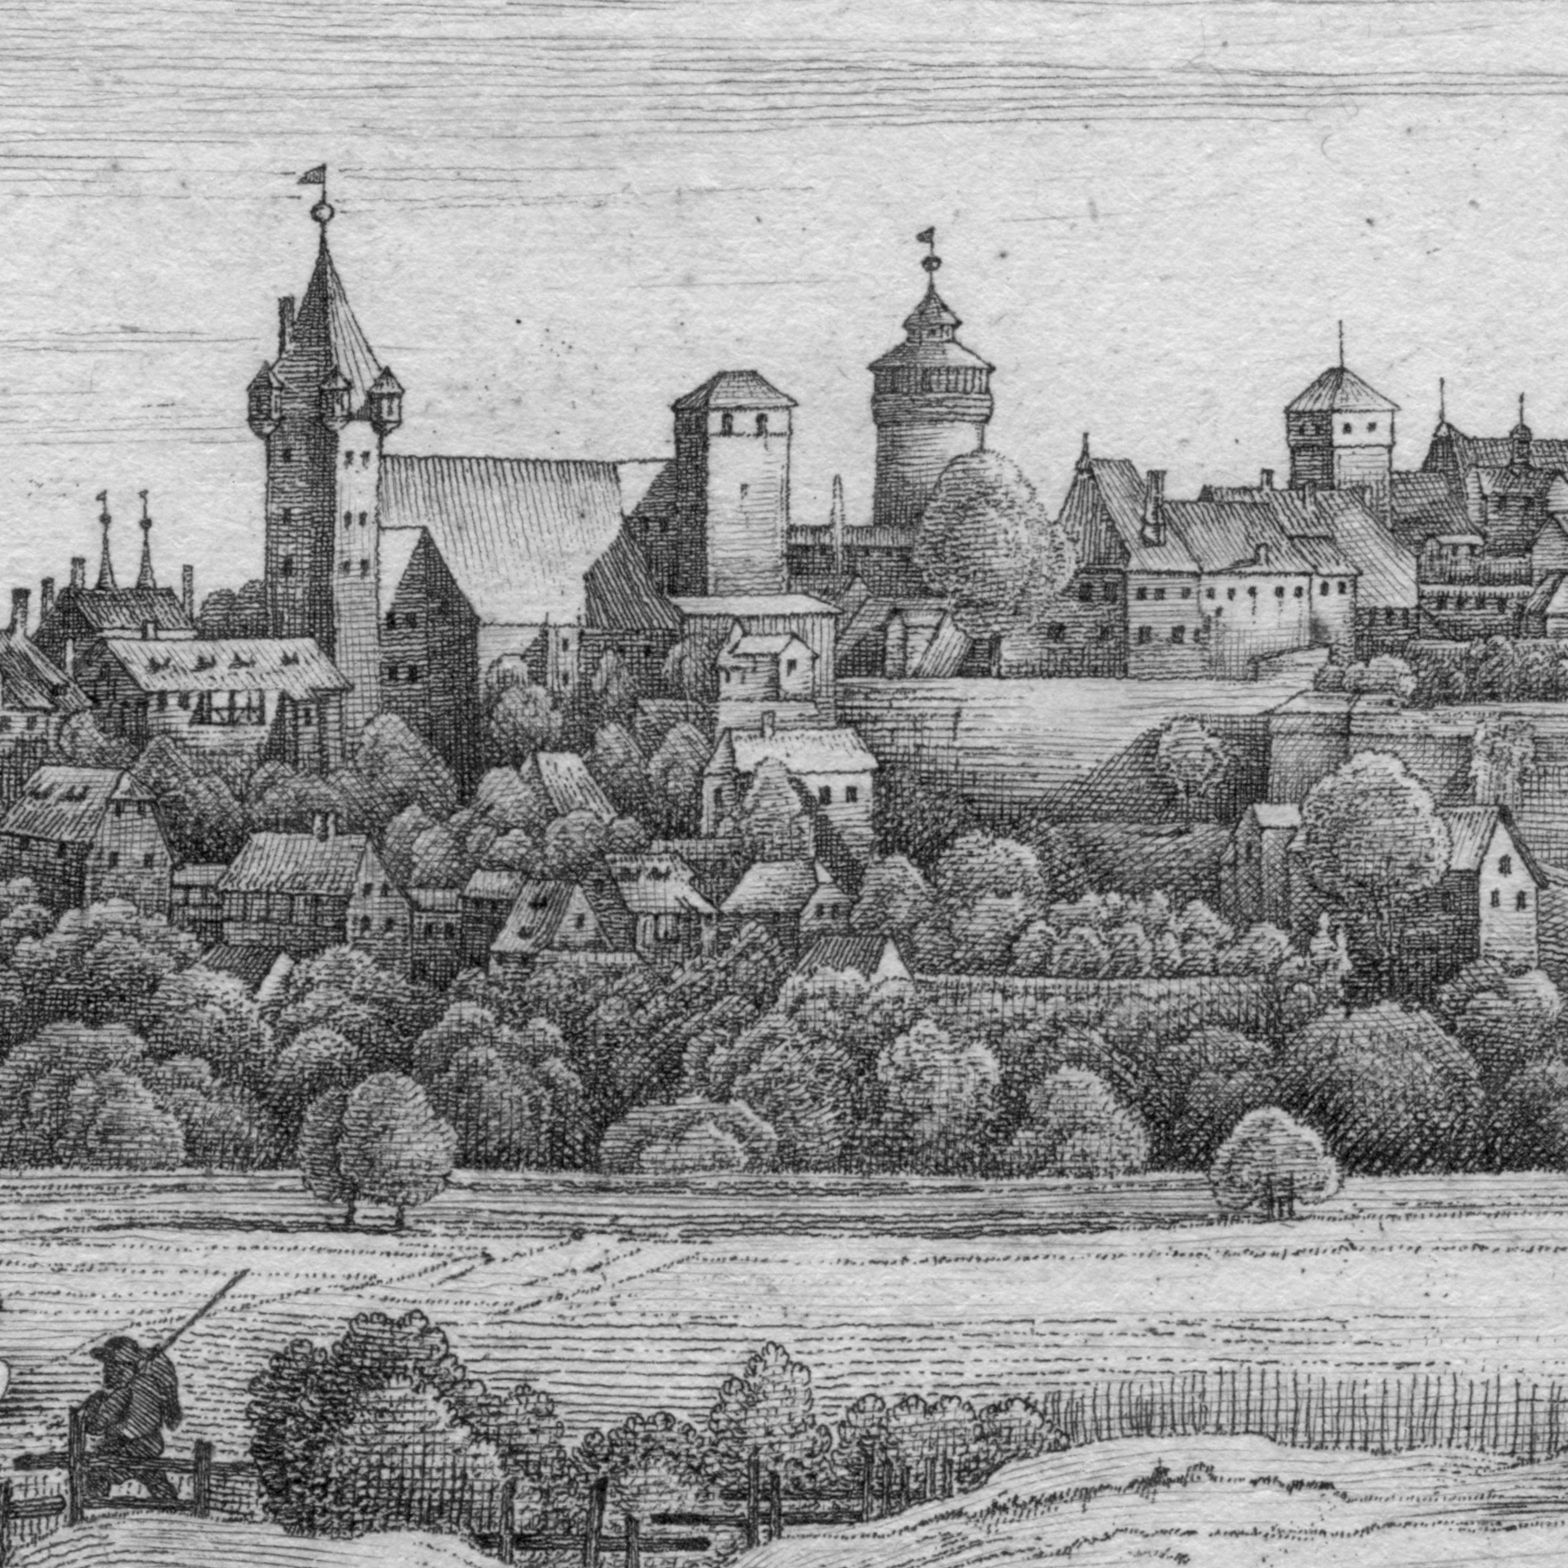 Die Burg von der Mitternacht-Seite Detailansicht mit Luginsland, Kaiserstallung, Fünfeckturm, Sinwellturm und Heidenturm